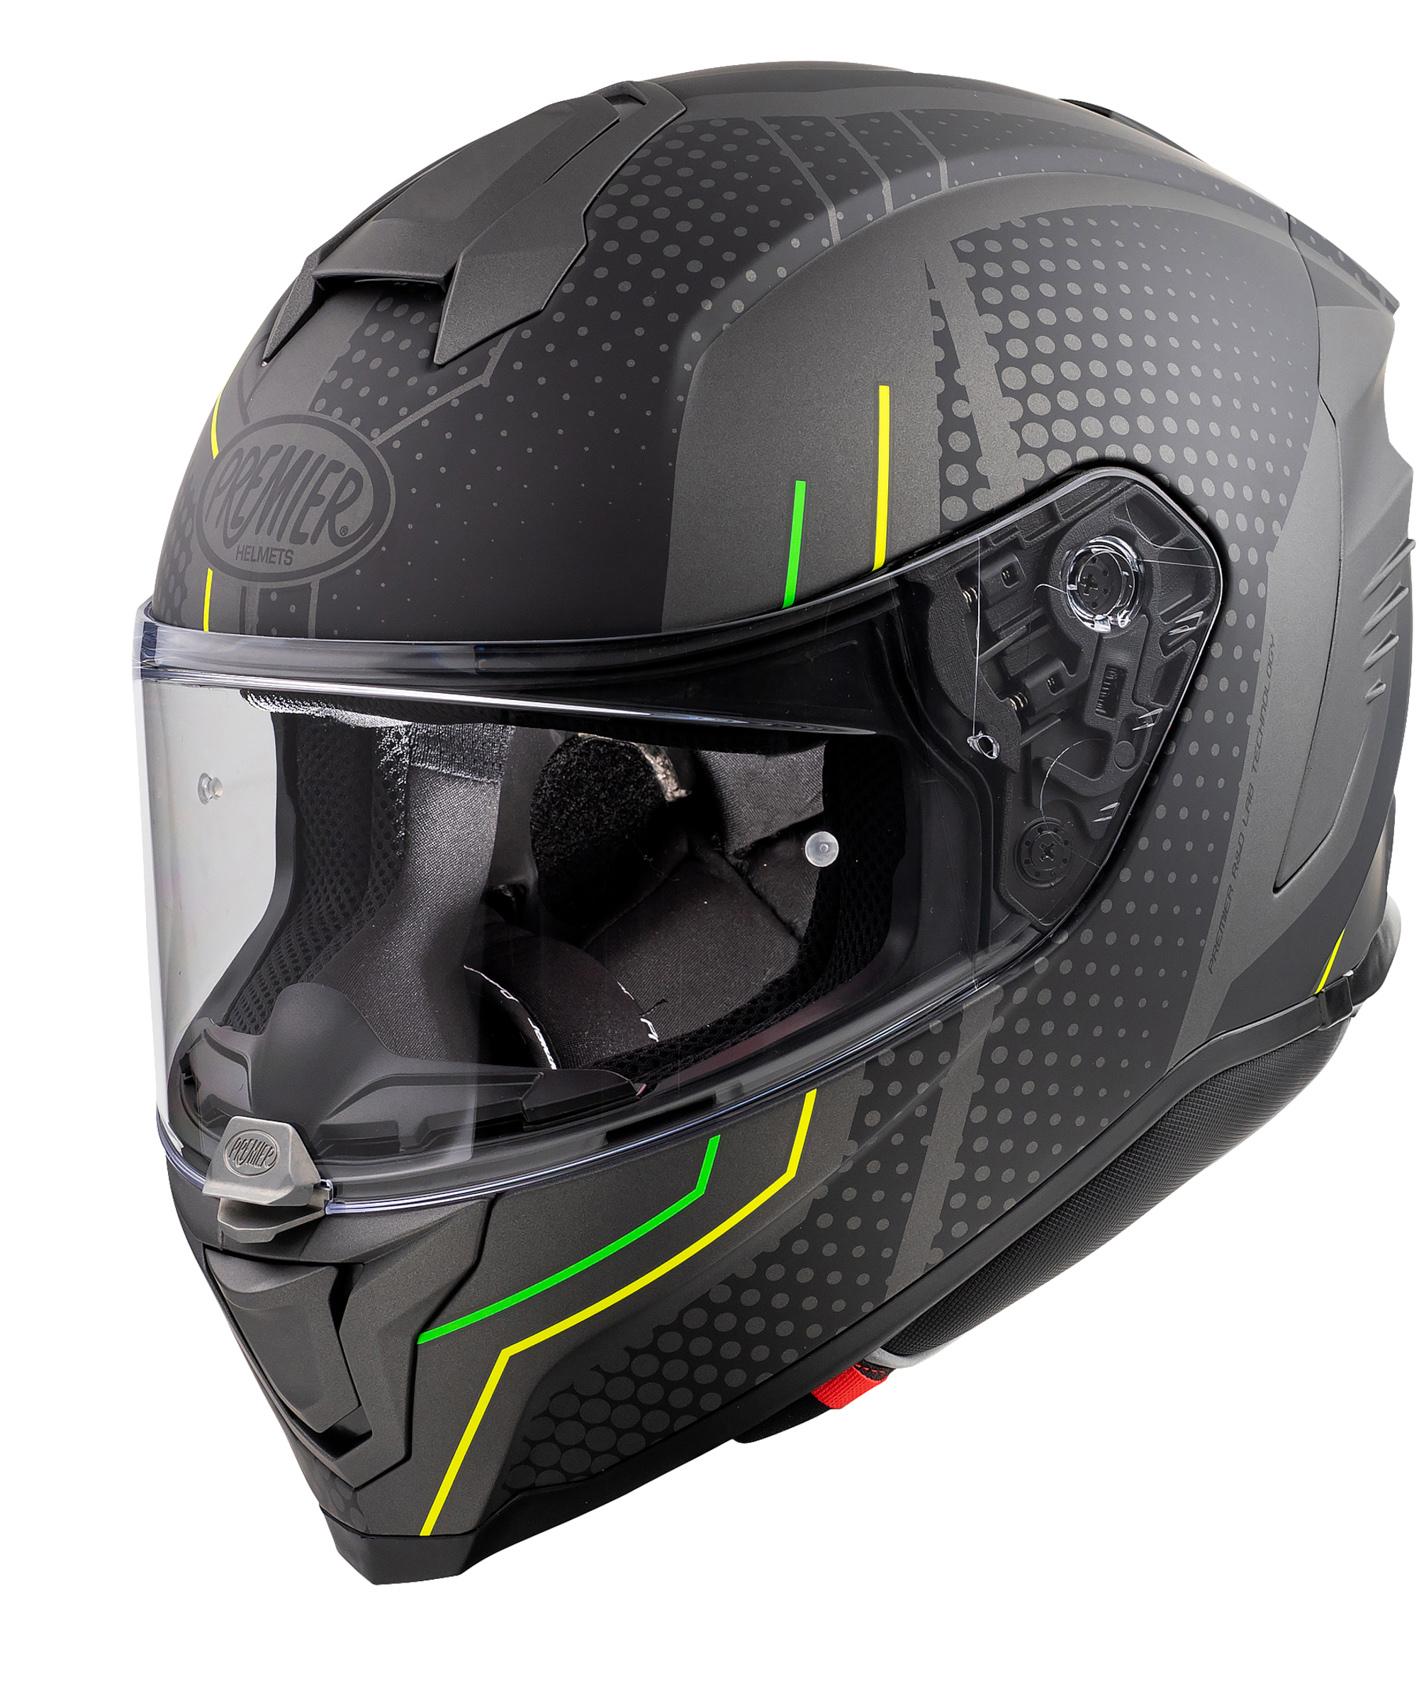 Premier Hyper Bp Full Face Motorcycle Helmet - Black/Gunmetal, S